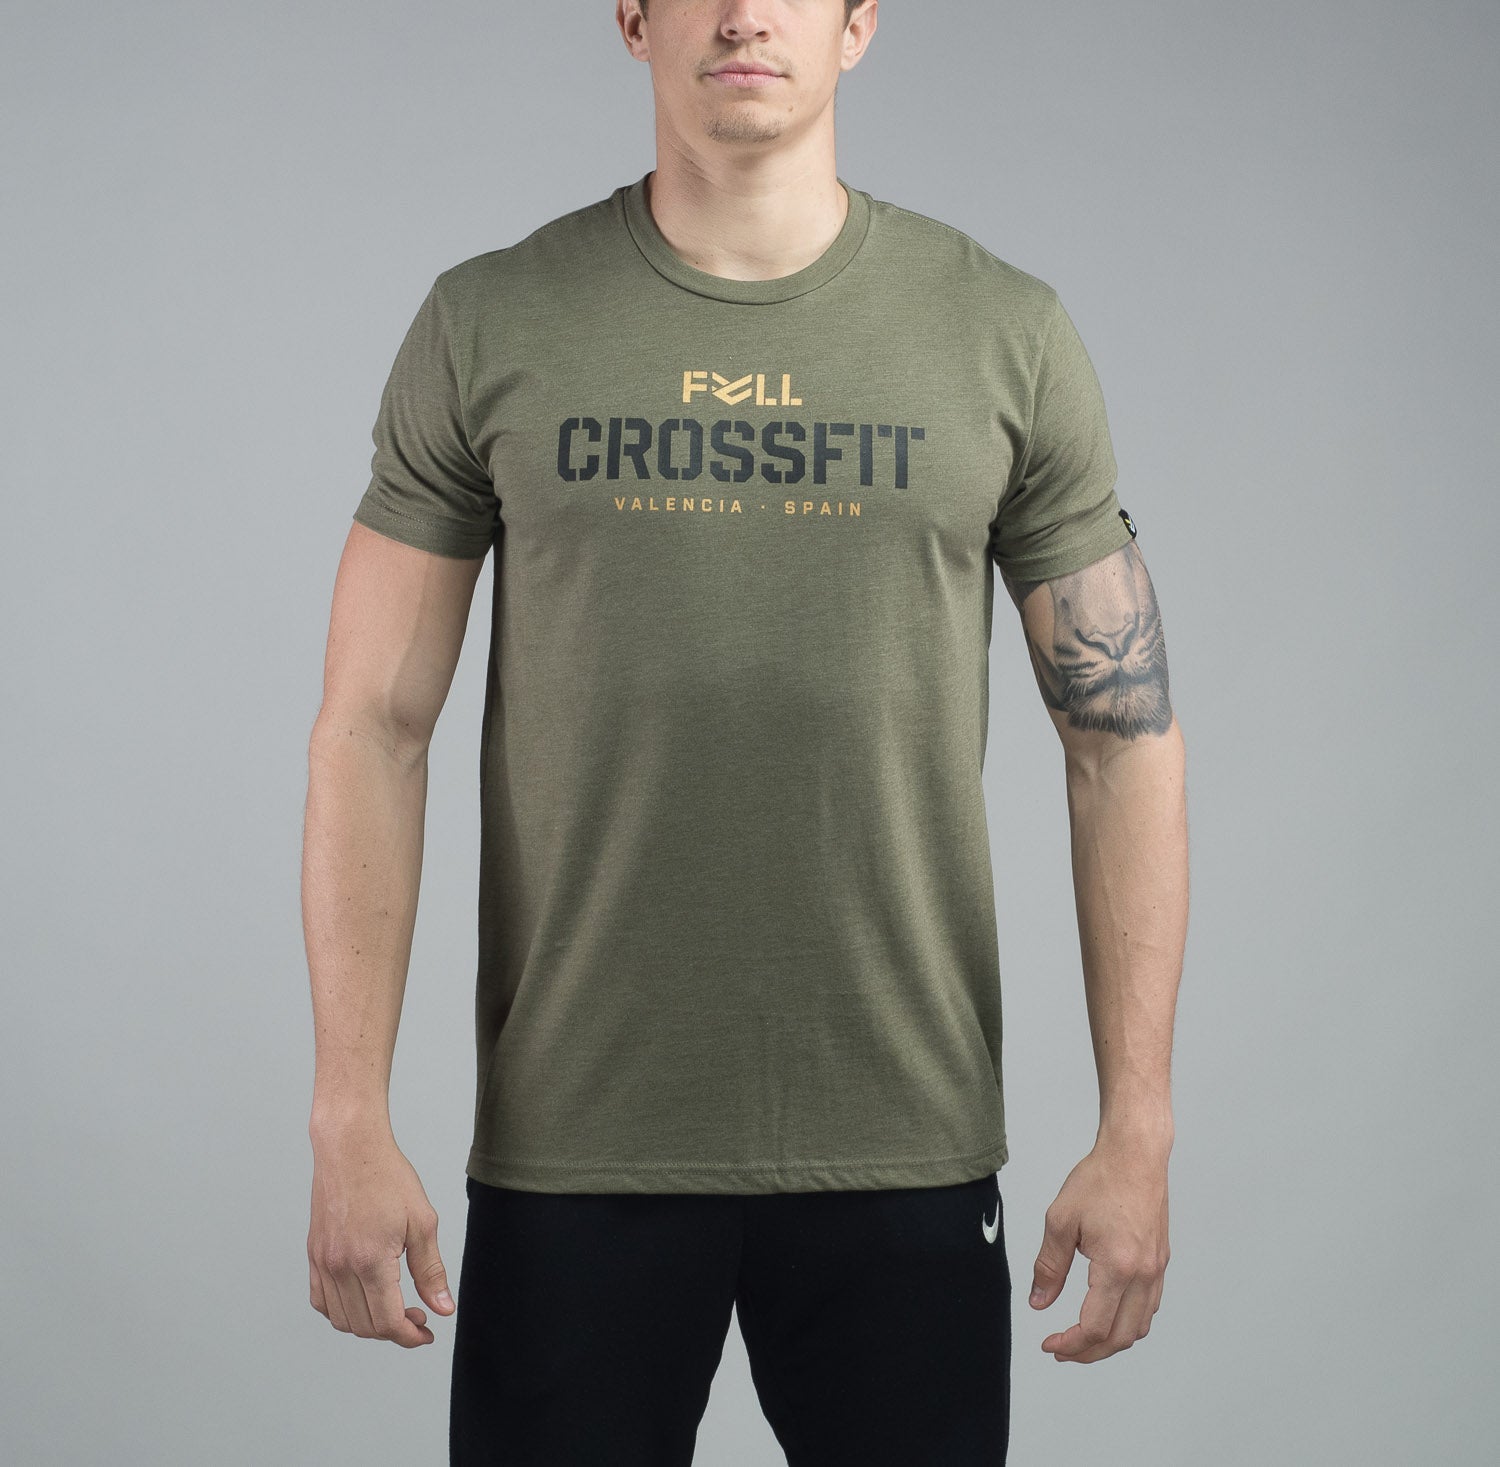 Camiseta Full Mash Color Verde Militar – Full Training